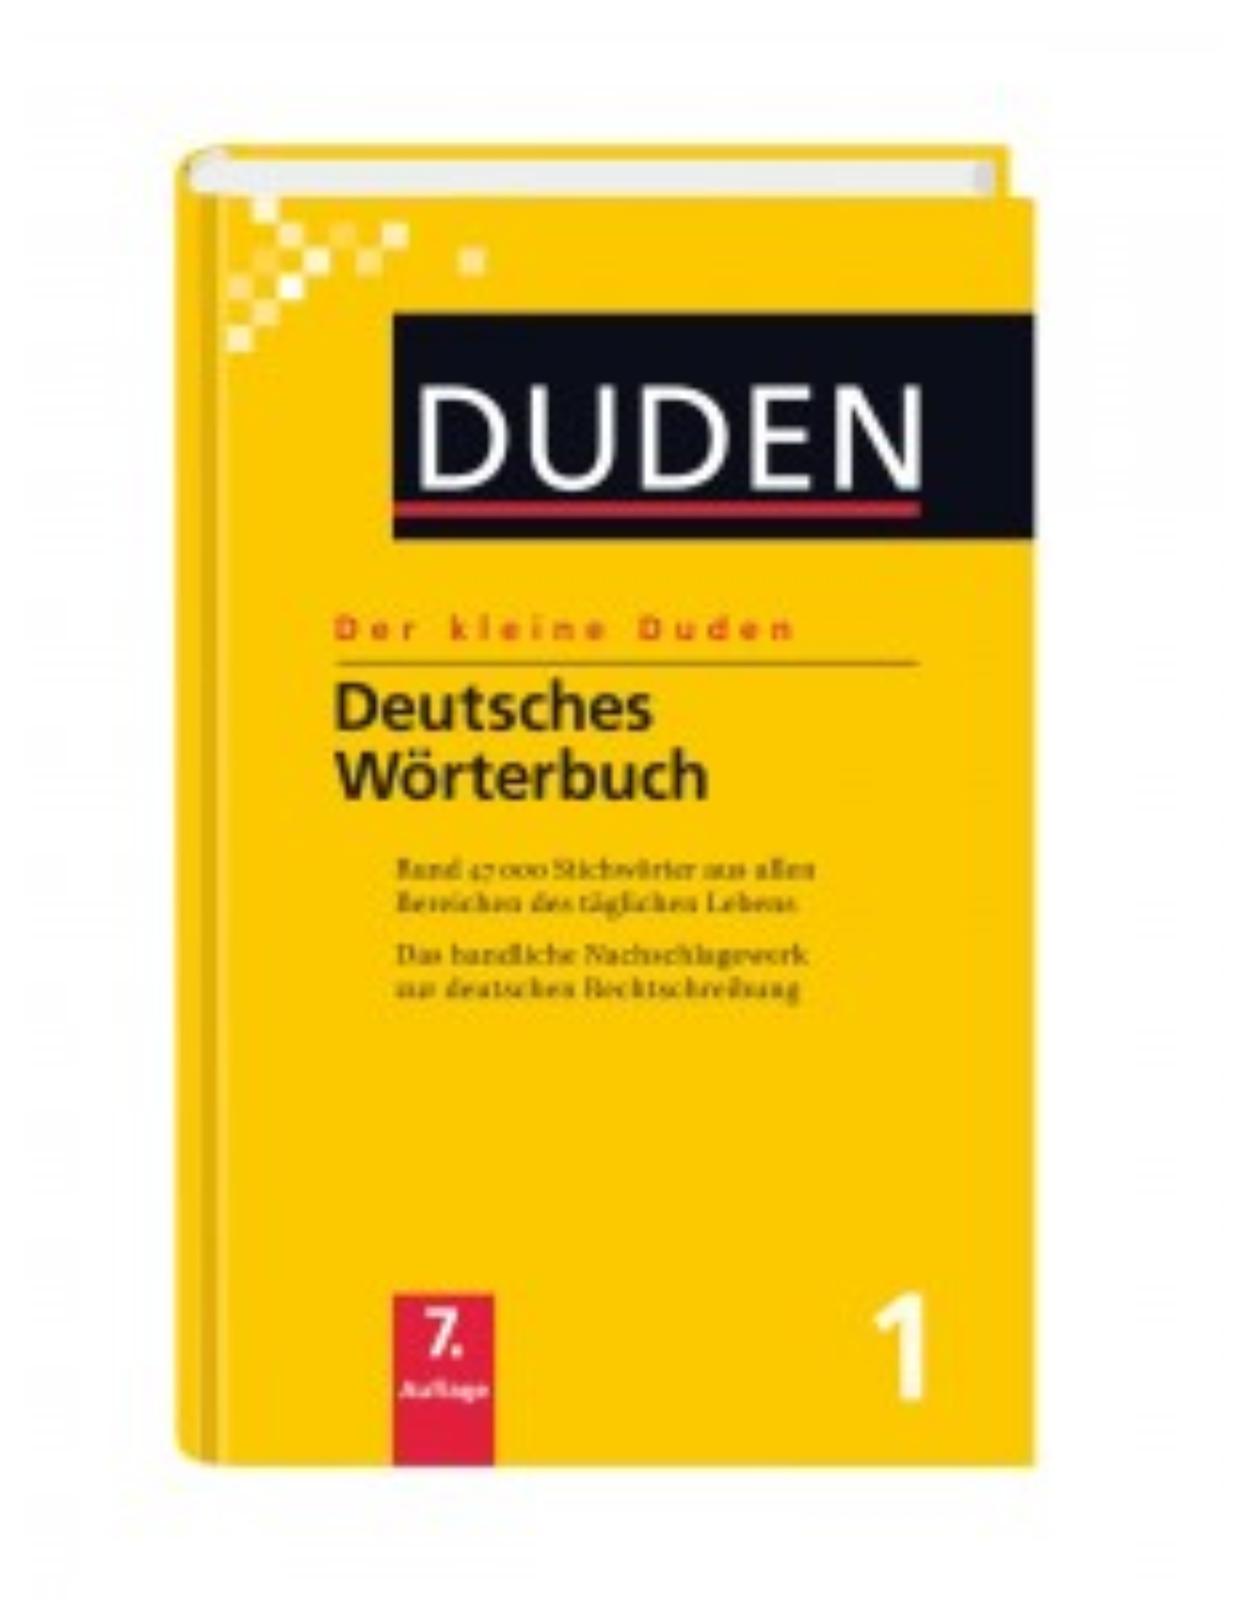 Der kleine Duden - Band 1 : Deutsches Wörterbuch